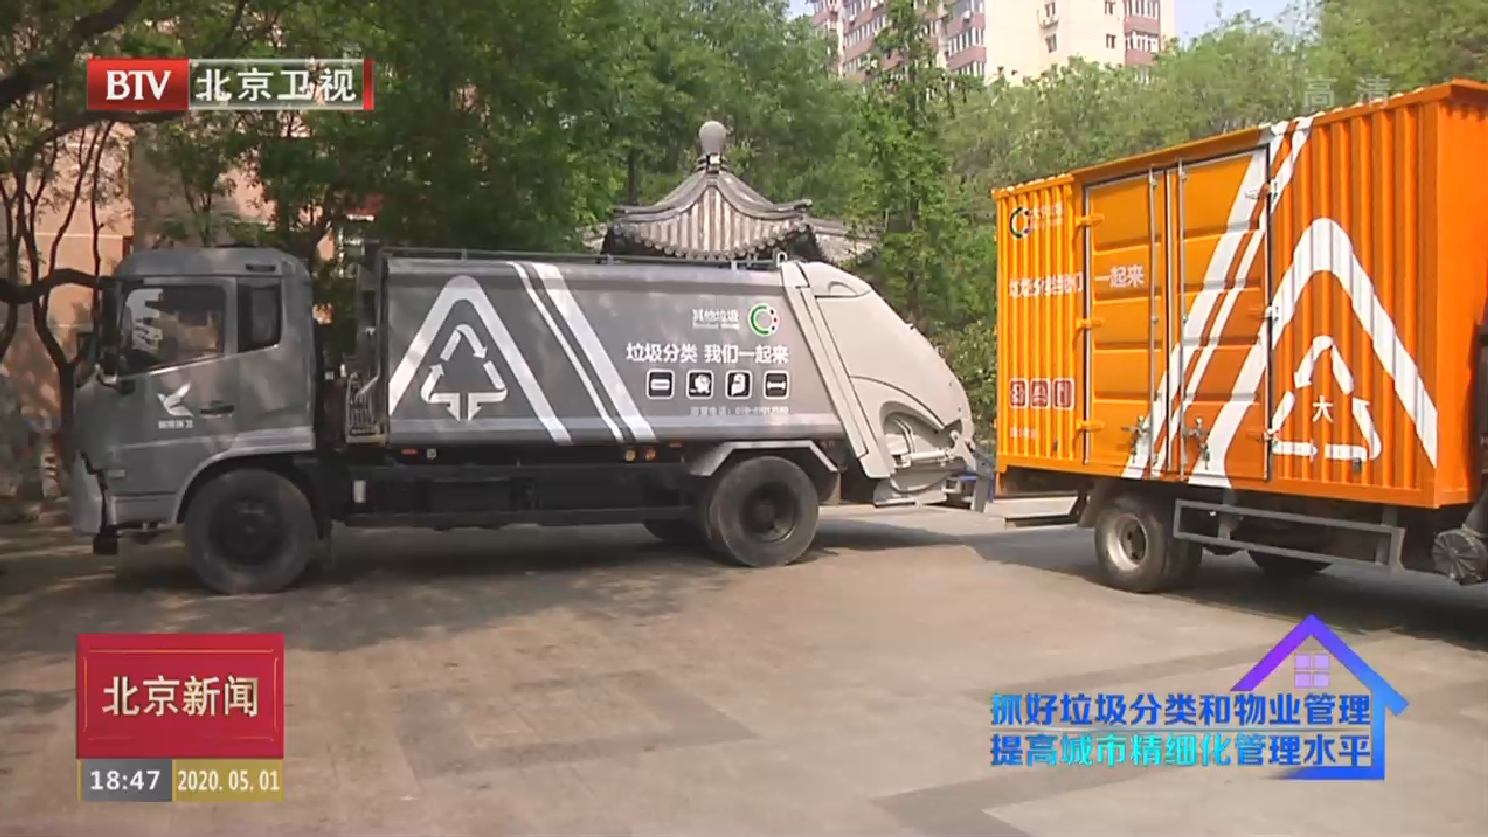 北京“生活垃圾分类标志”首亮相  垃圾分类工作全面铺开